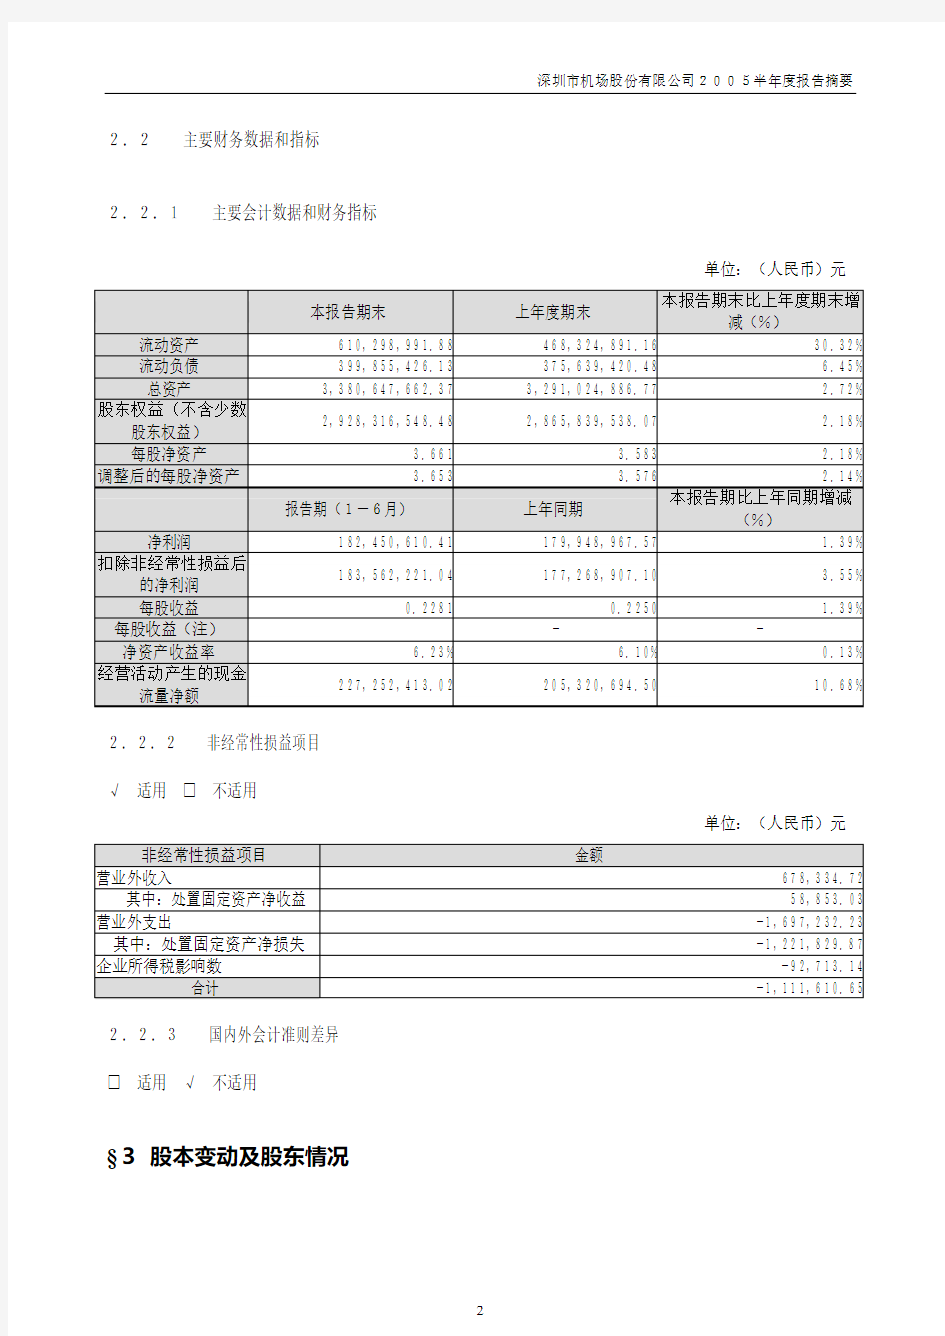 深圳市机场股份有限公司2005半年度报告摘要